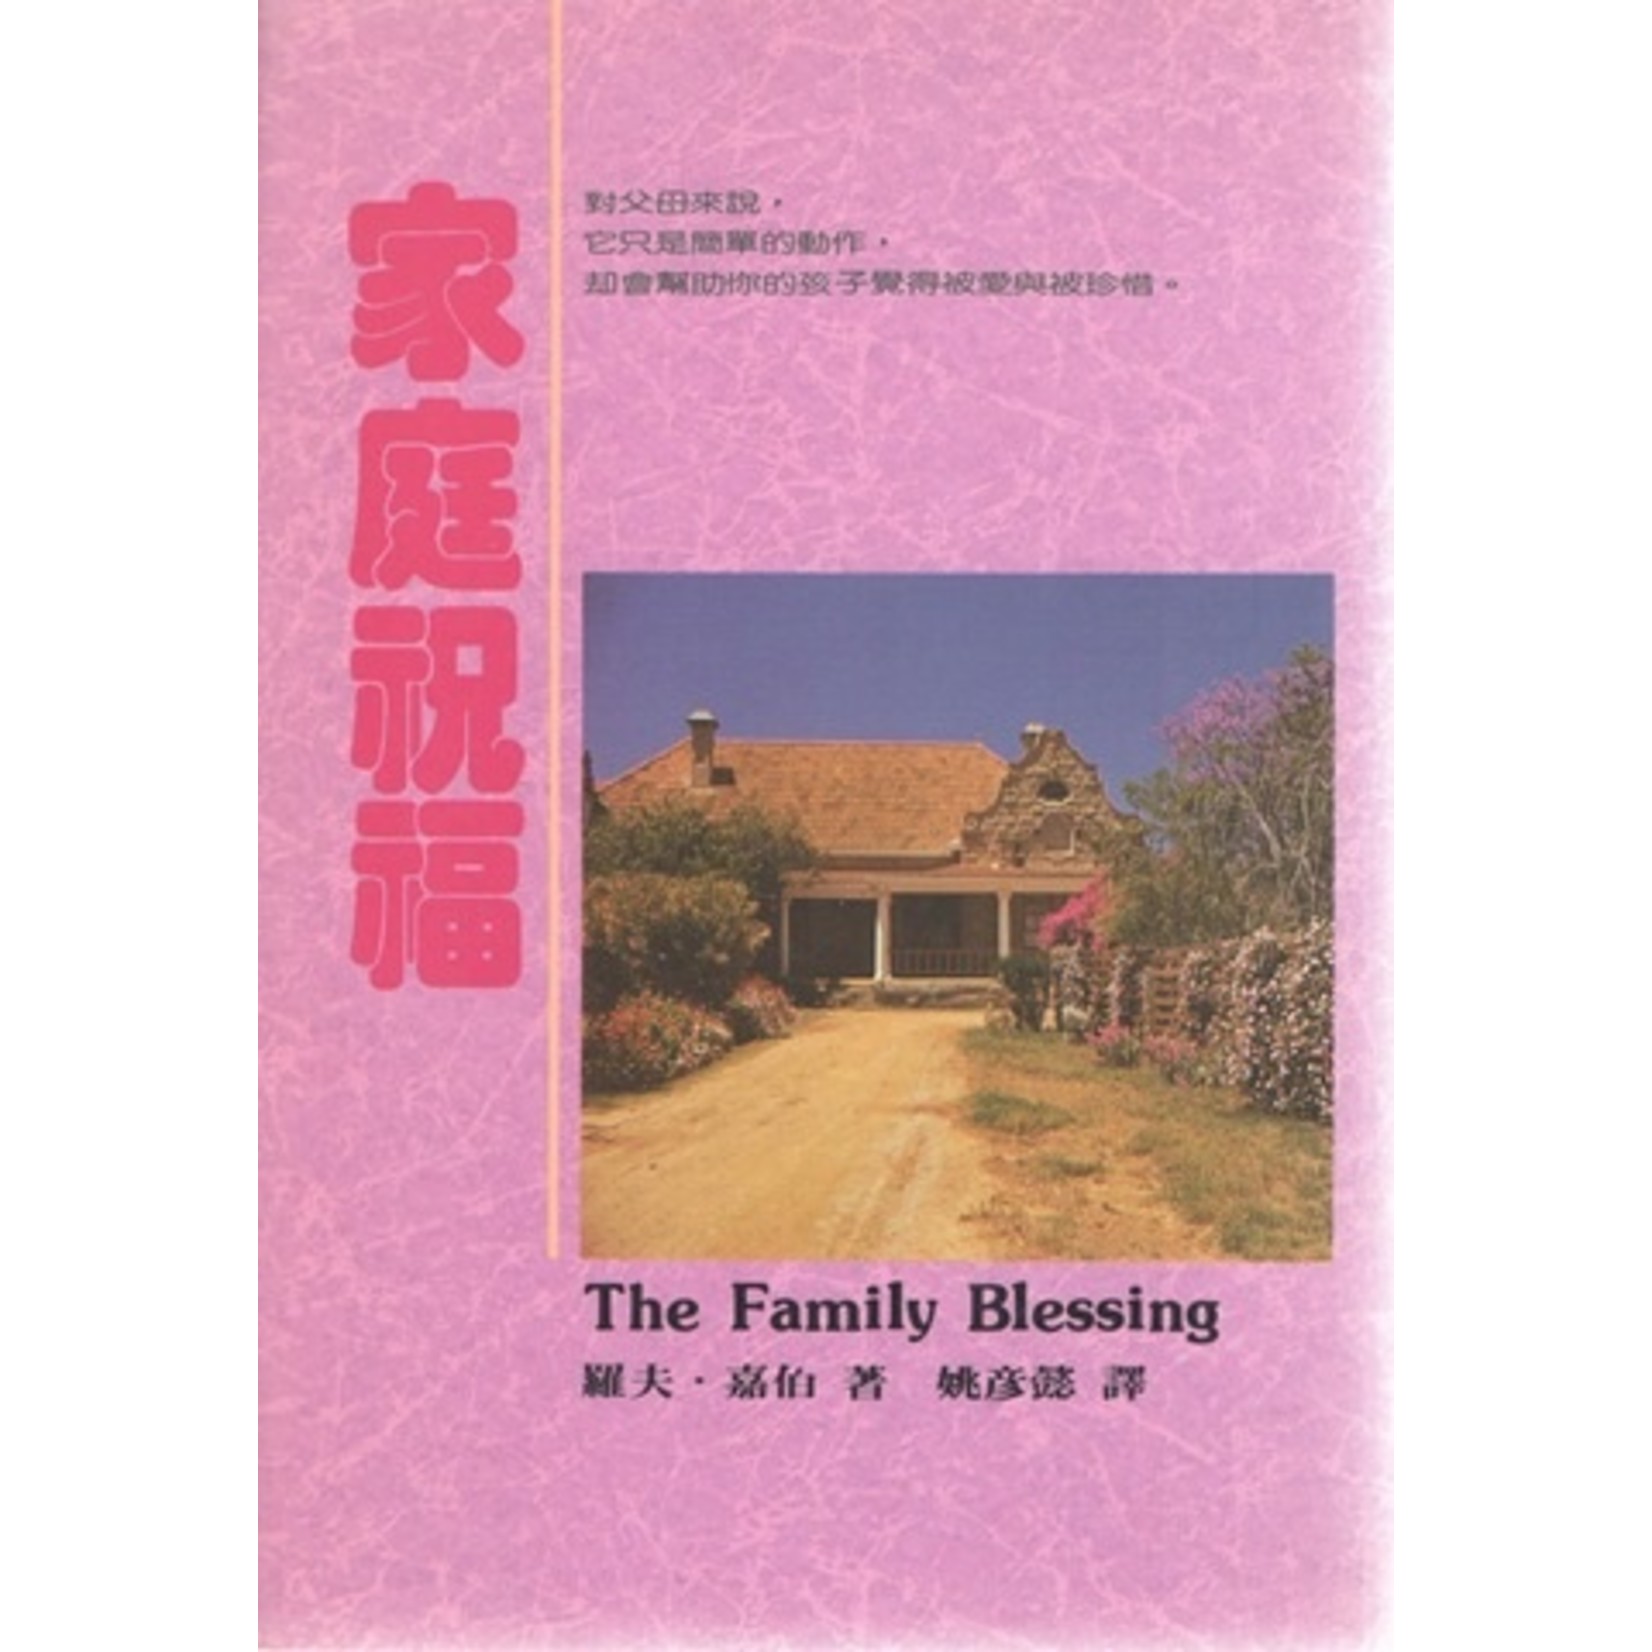 中國學園傳道會 Taiwan Campus Crusade for Christ 家庭祝福 The Family Blessing